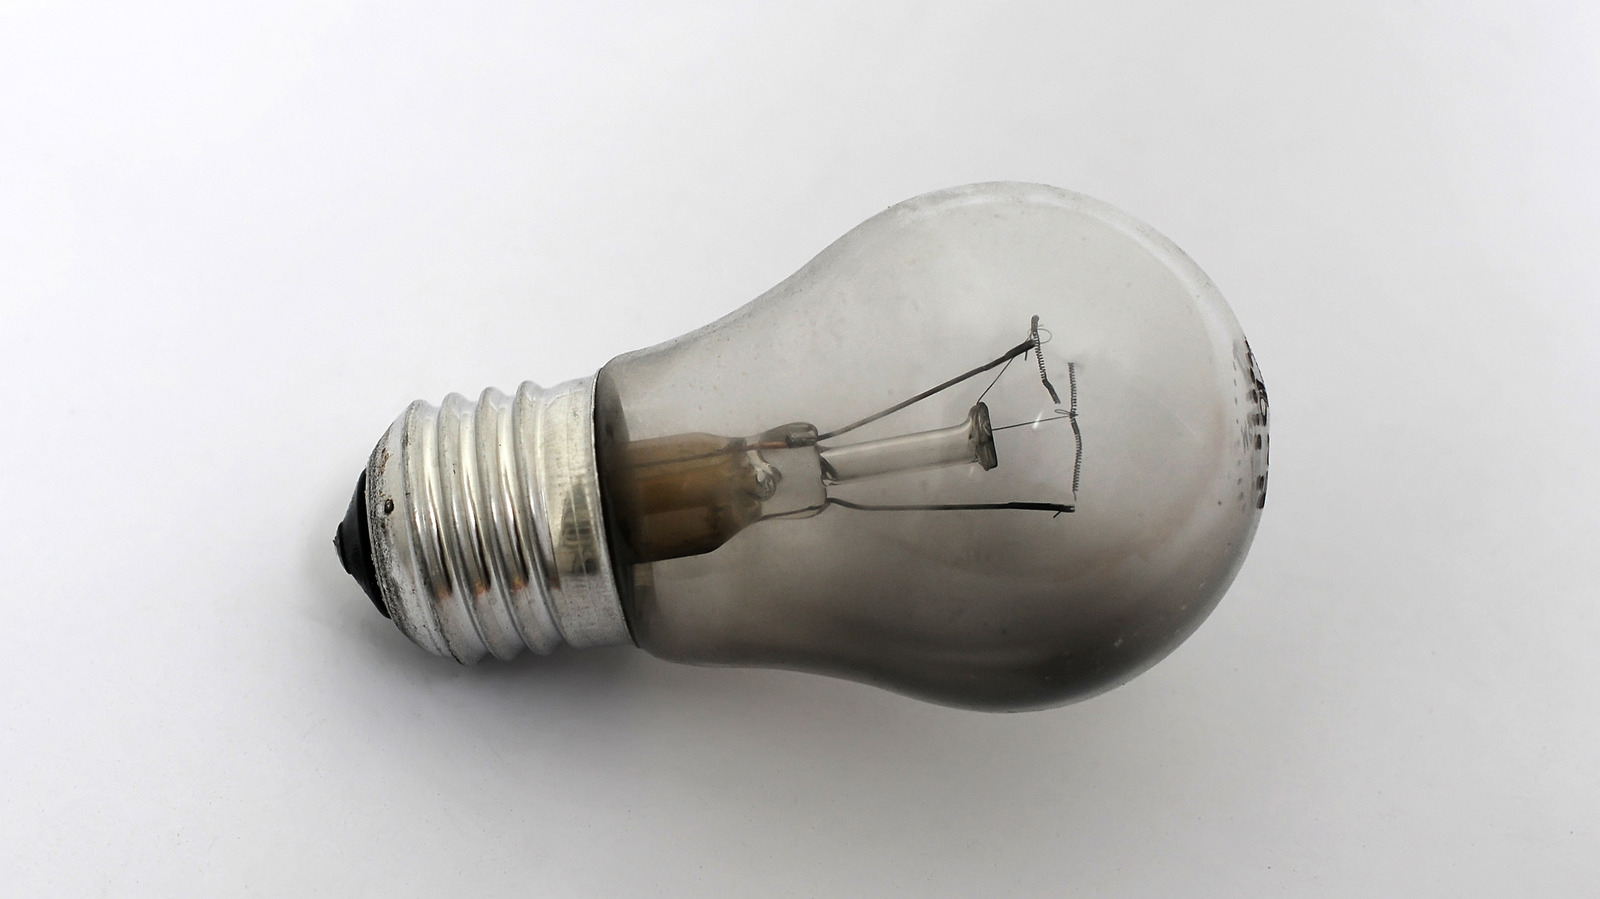 Is An Empty Light Socket Dangerous?